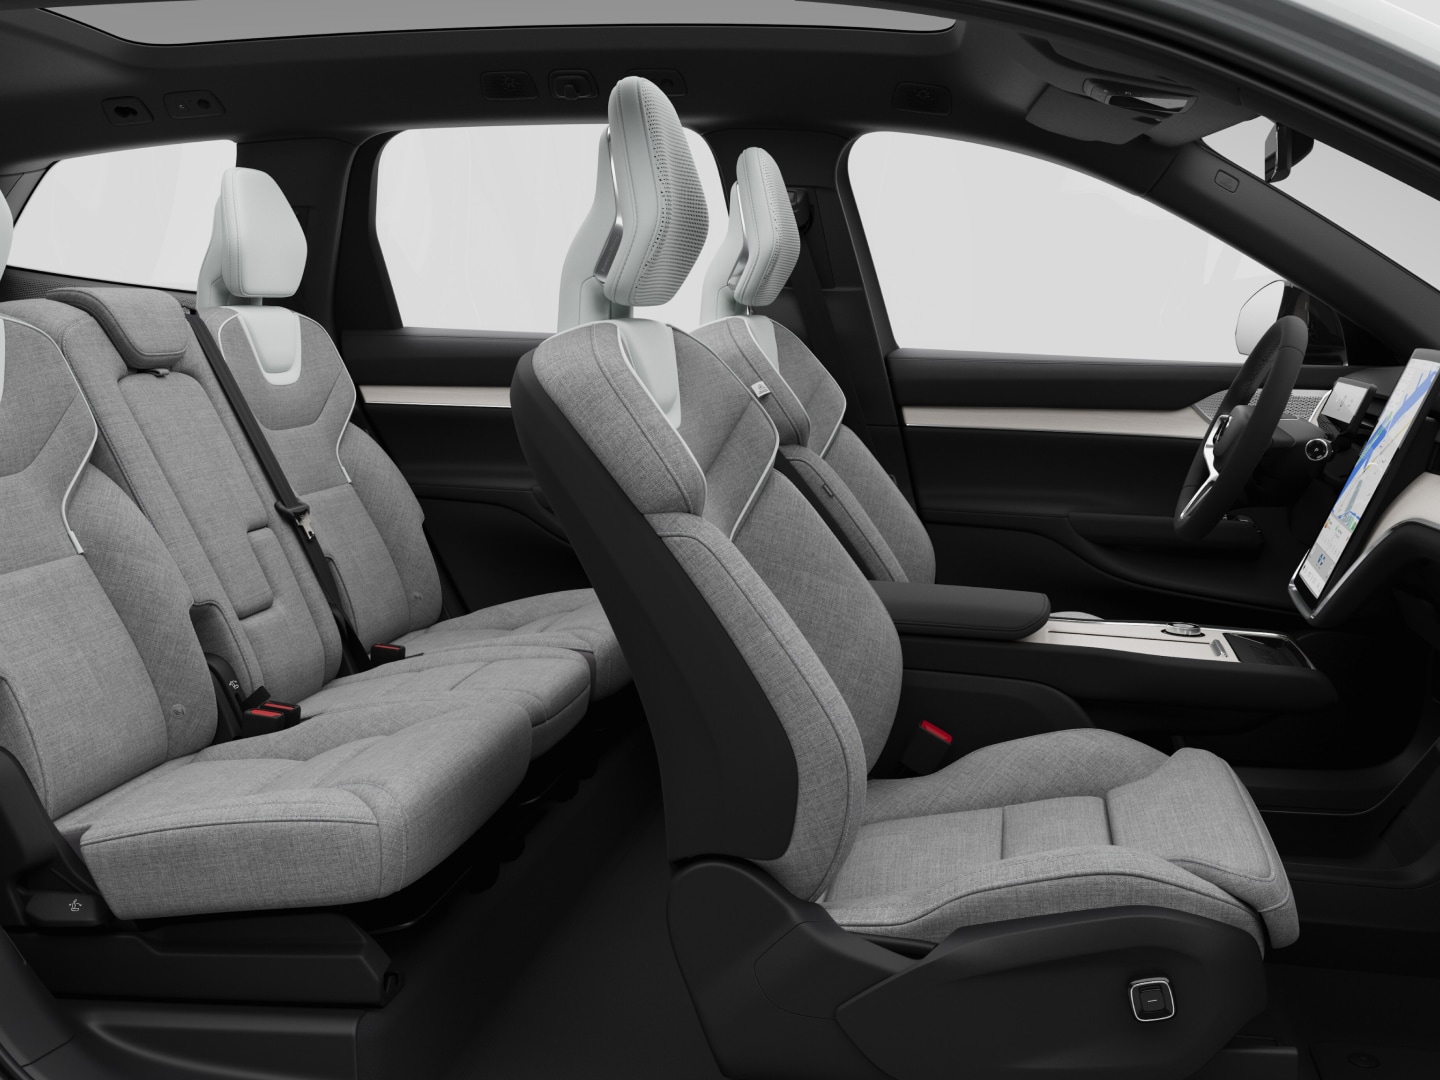 Vue latérale de l'habillage des sièges de l'habitacle d'une Volvo EX90.